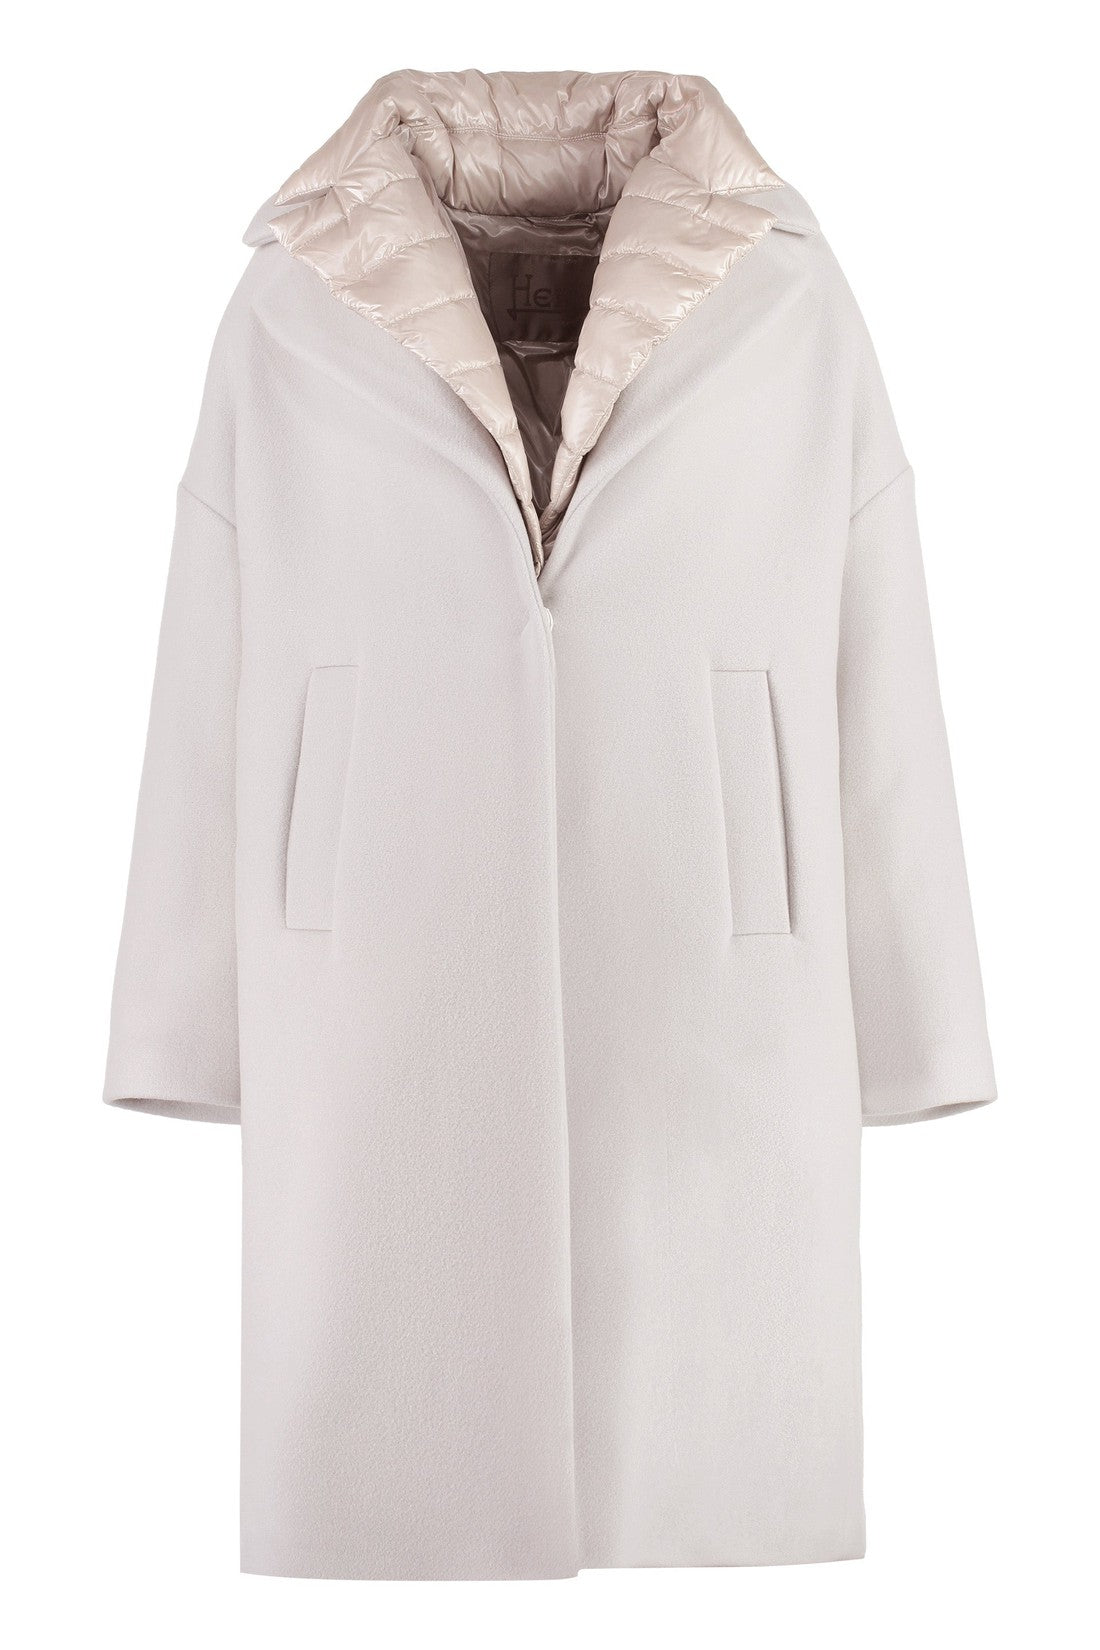 Herno-OUTLET-SALE-Wool blend coat-ARCHIVIST